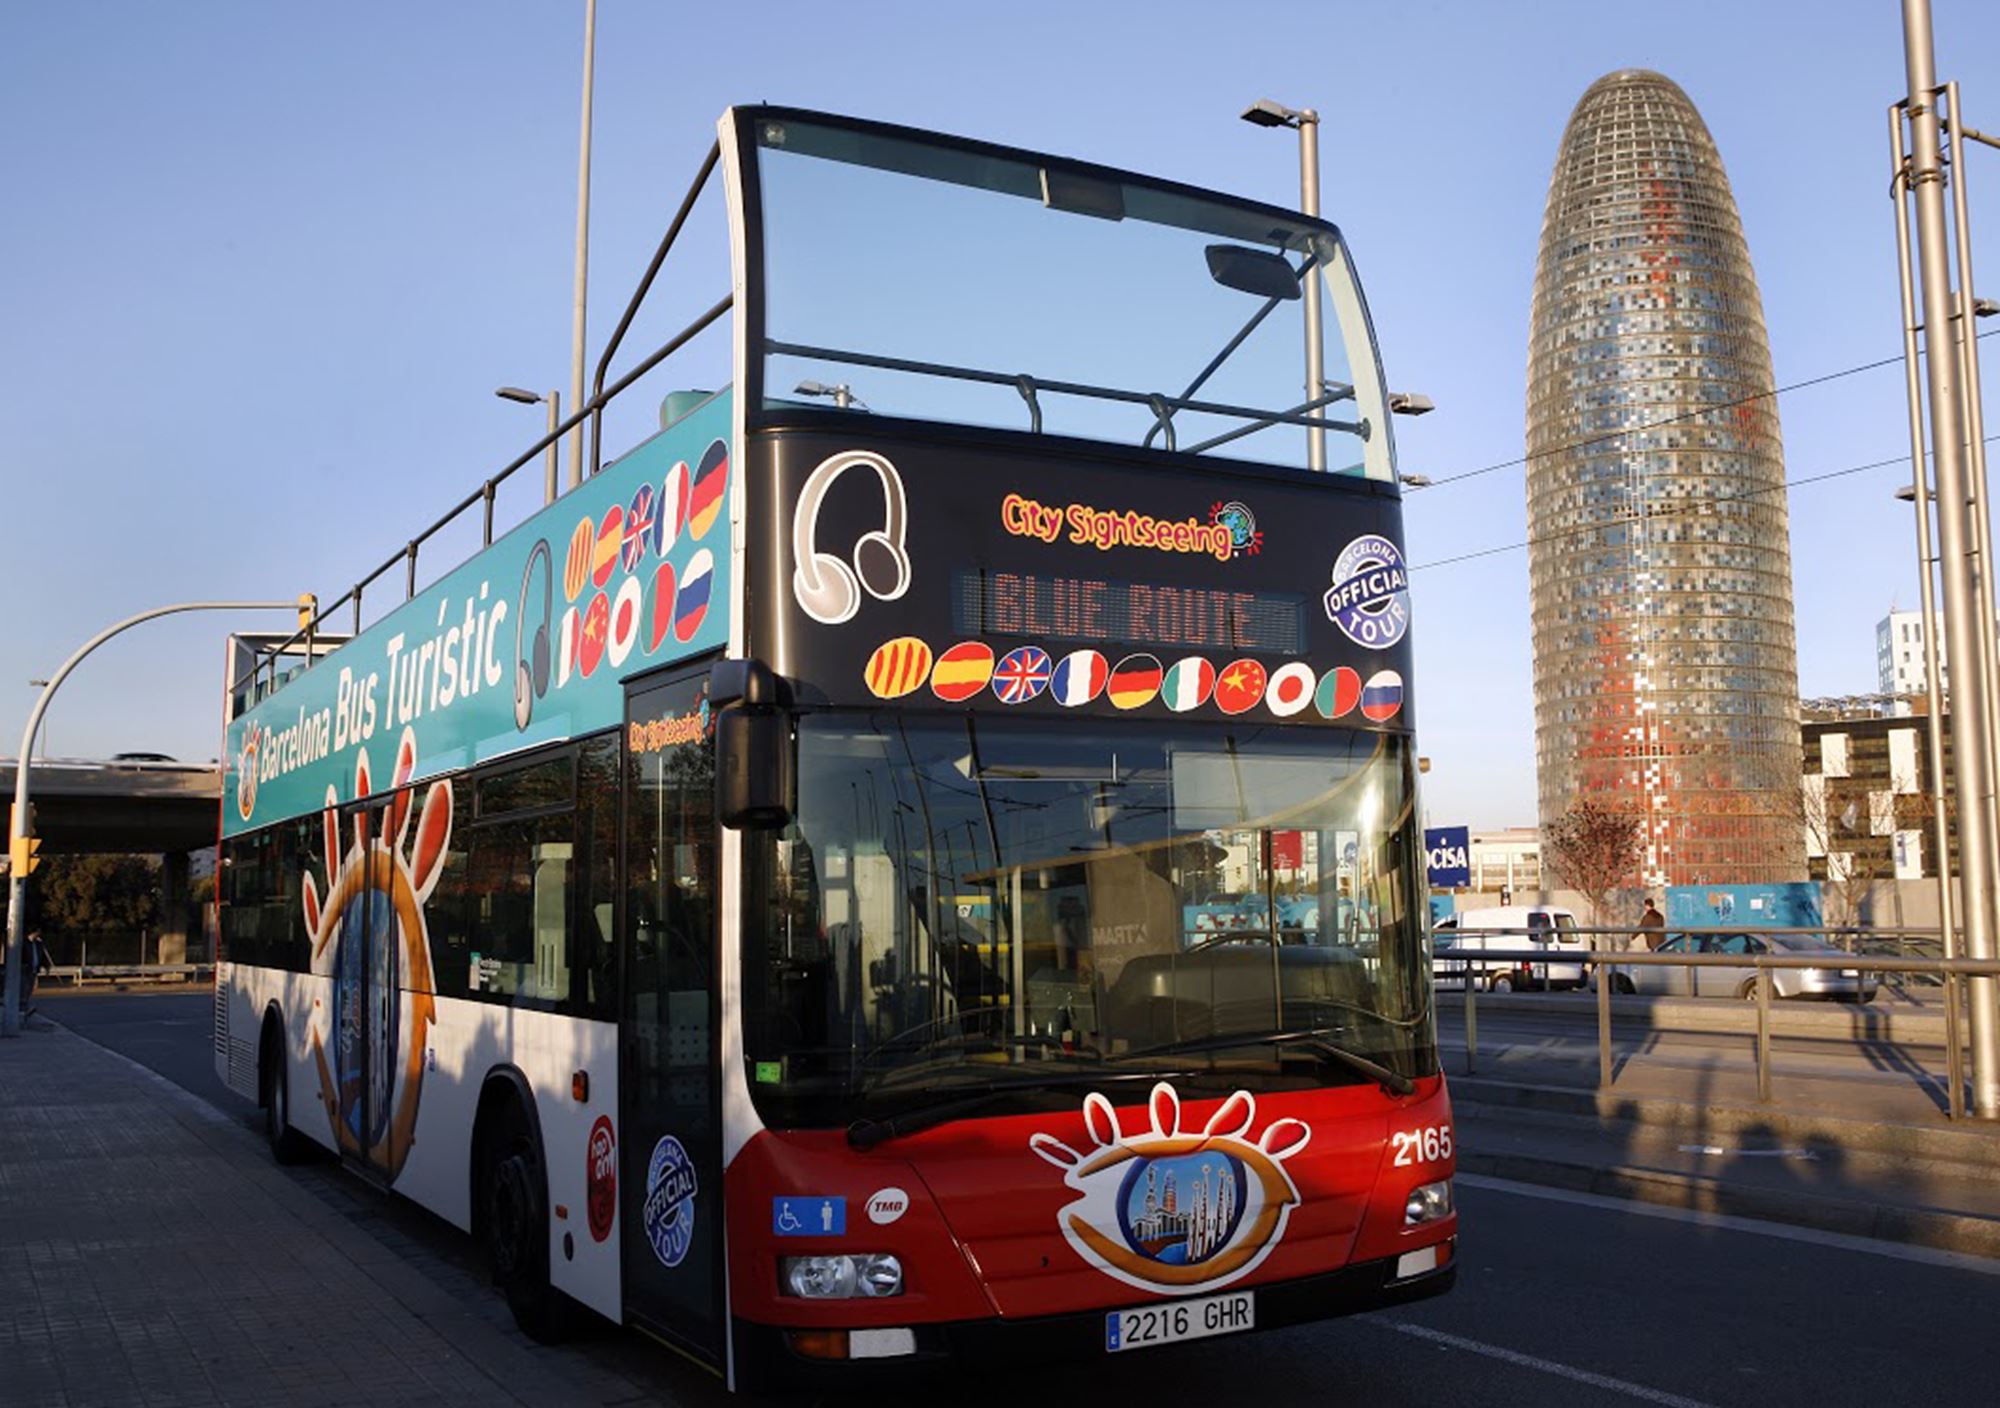 buchen online tickets karten eintrittskarten Fahrkarte Touristikbus City Sightseeing Barcelona